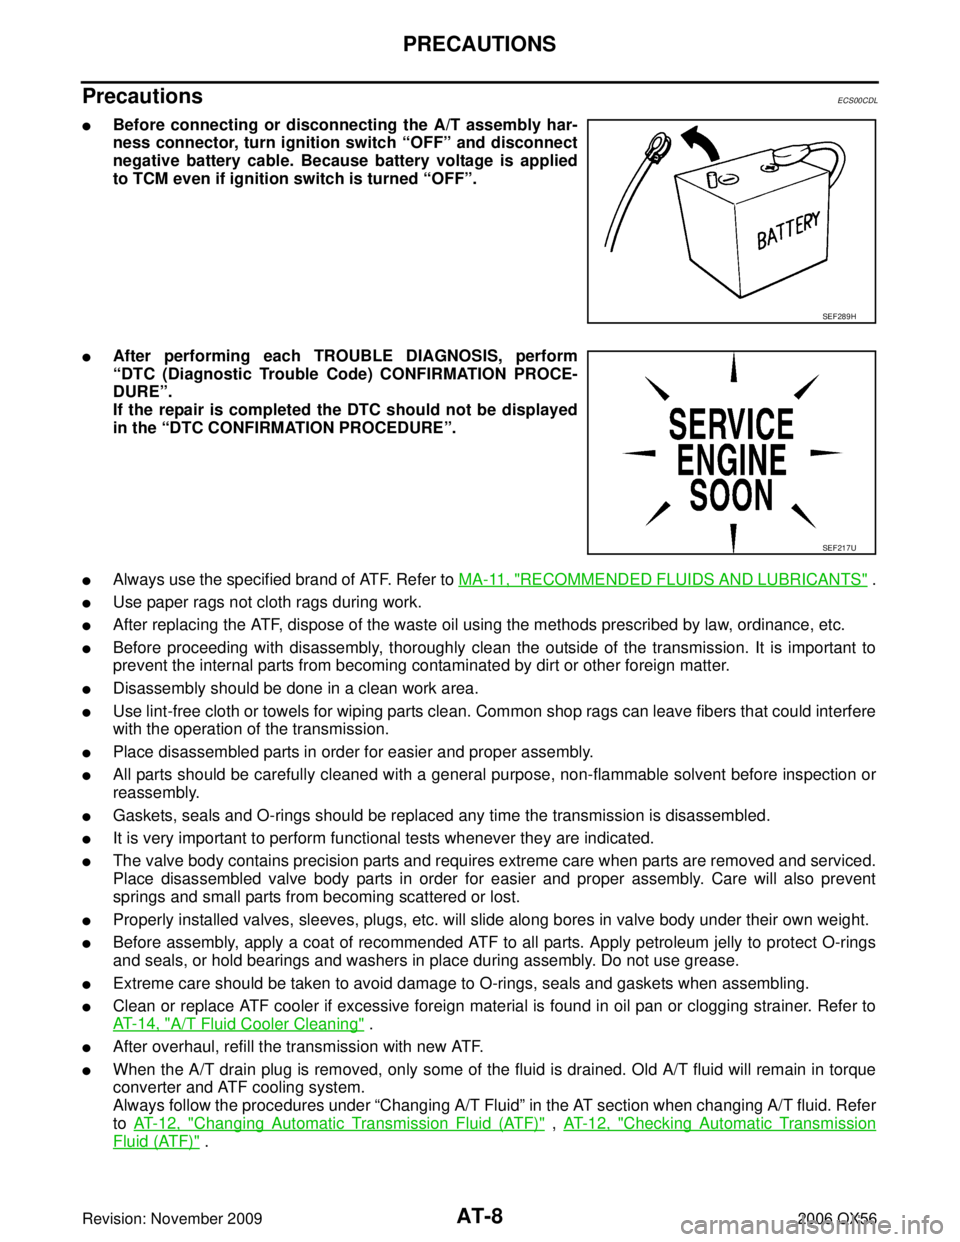 INFINITI QX56 2006  Factory Service Manual AT-8
PRECAUTIONS
Revision: November 20092006 QX56
Precautions ECS00CDL
Before connecting or disconnecting the A/T assembly har-
ness connector, turn ignition switch “OFF” and disconnect
negative 